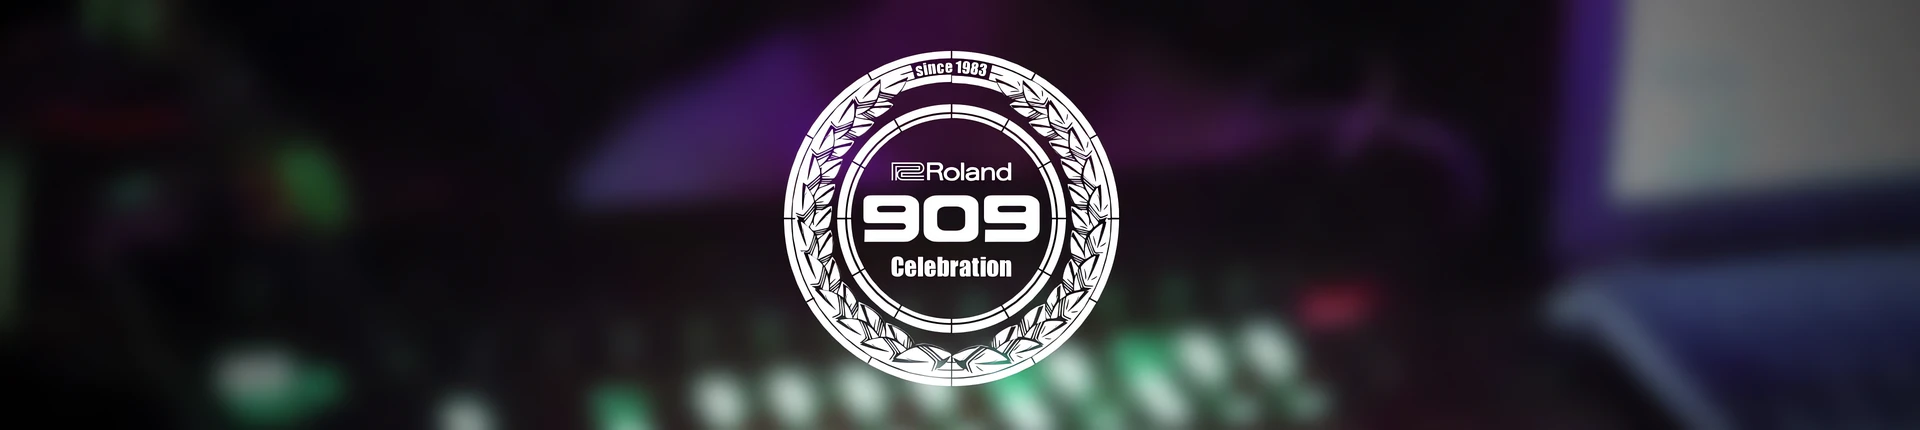 Roland&Boss zapraszają do Manufaktury 10 września!